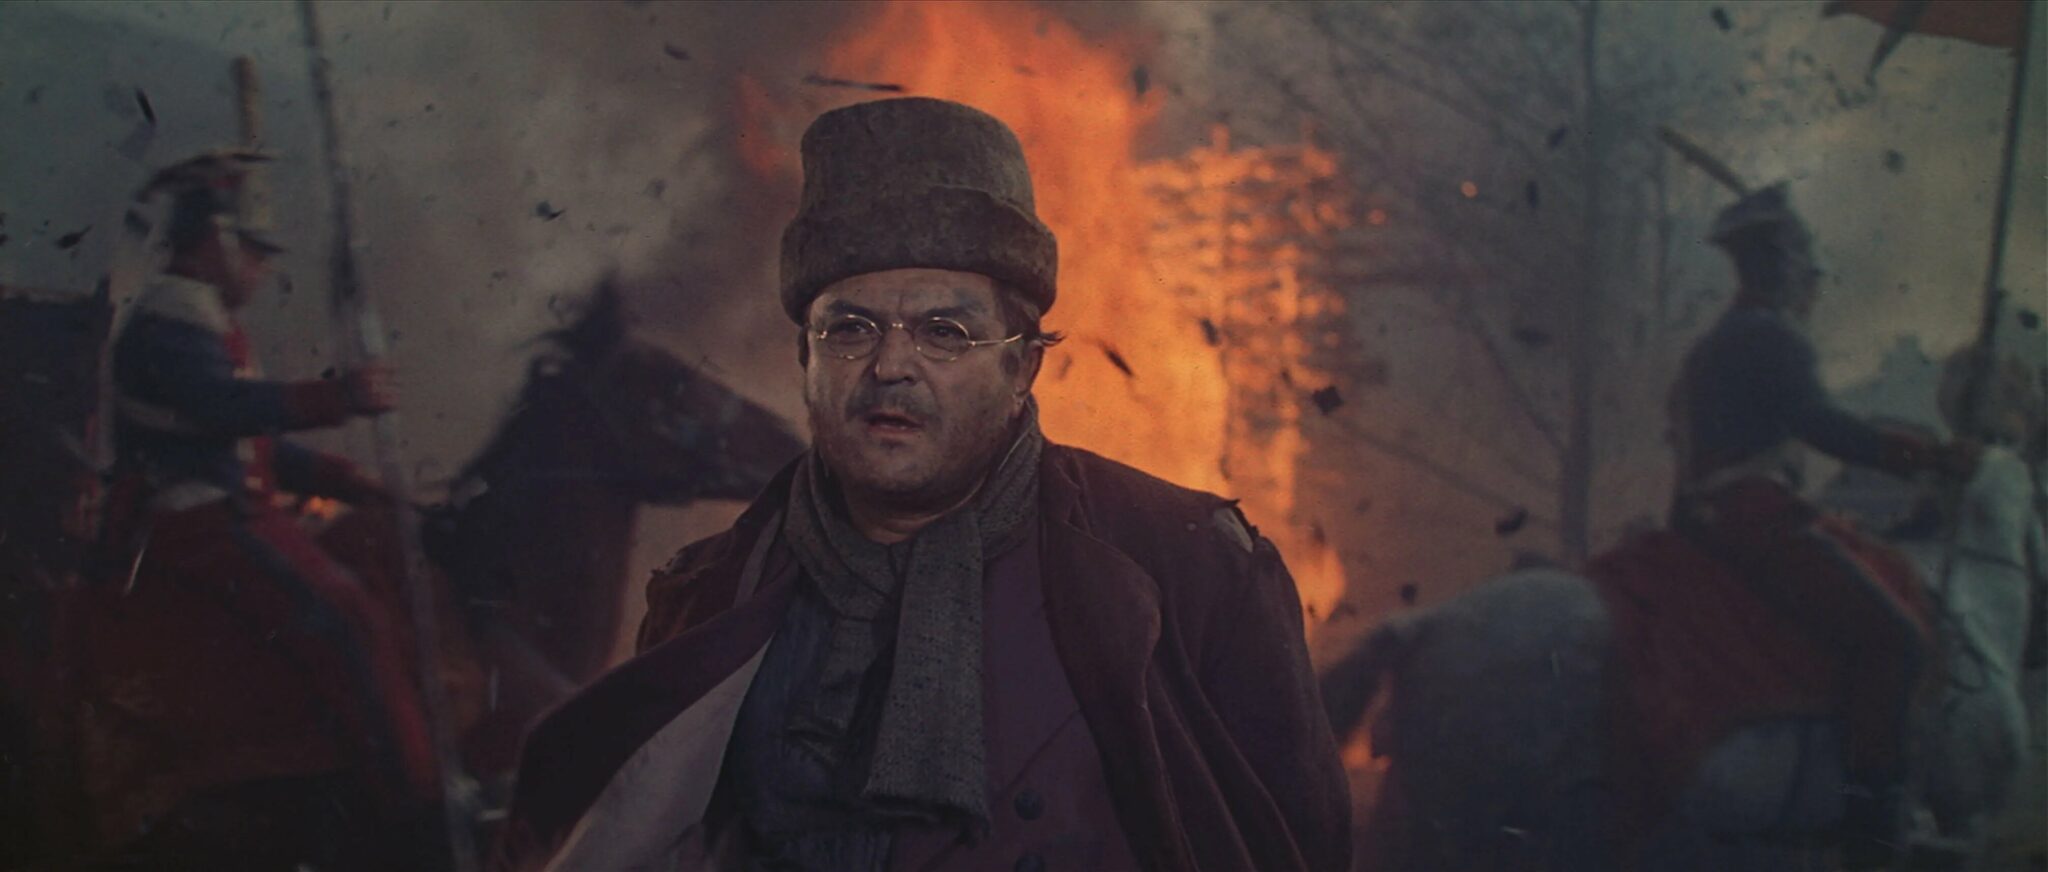 Pierre Bezukhov (Sergei Bondartschuk) steht in Mitten von Trümmern im verschneiten sowie verwüsteten Moskau. Berittene Soldaten reiten hinter ihm und es brennt.